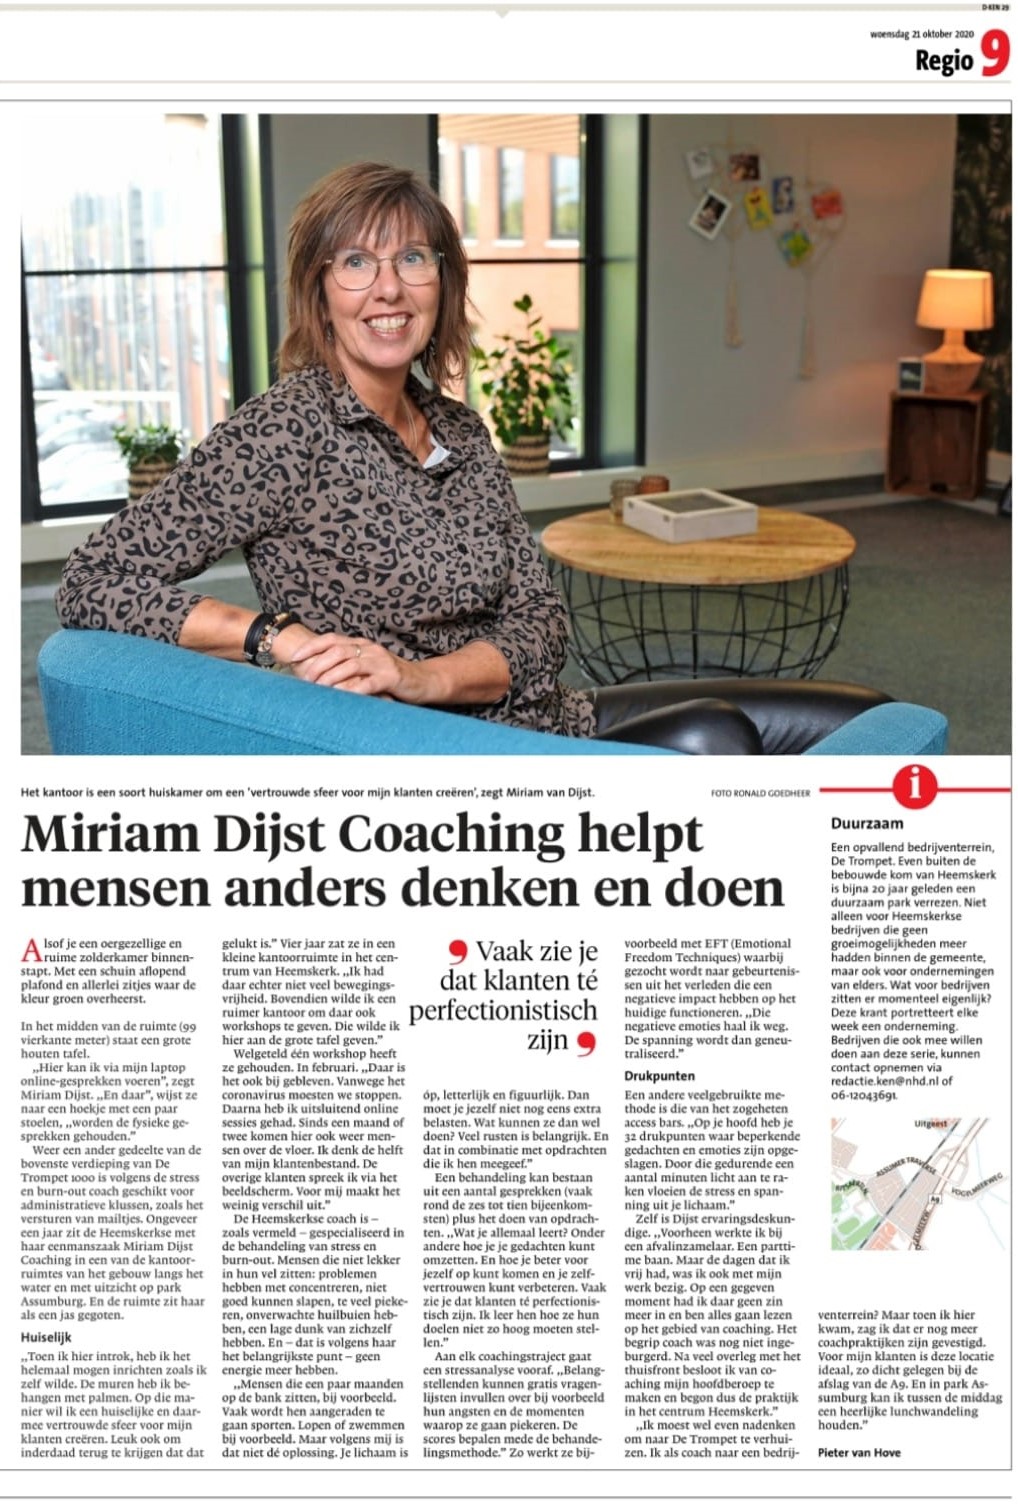 Miriam Dijst Coaching in Noordhollands Dagblad